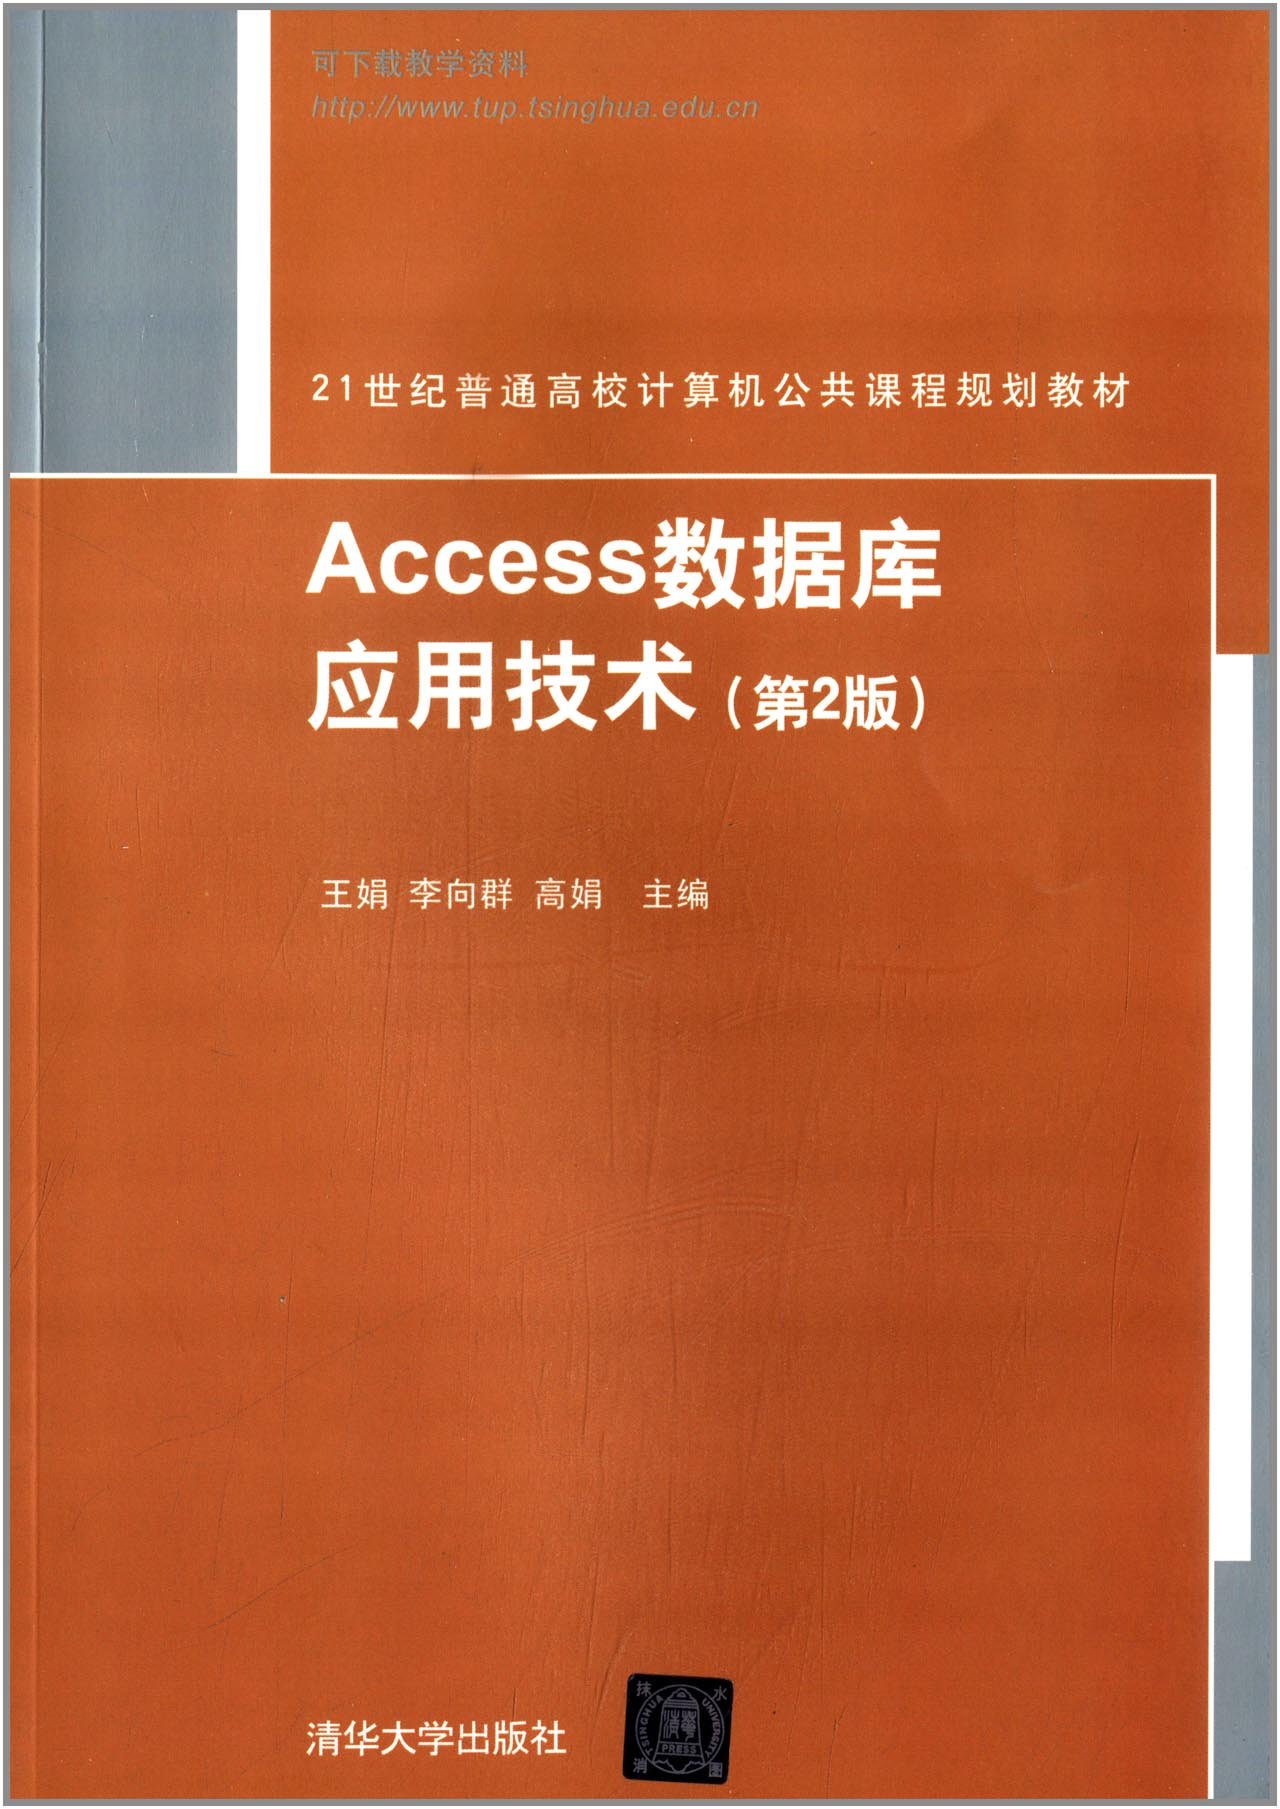 Access資料庫套用技術（第2版）(2014年清華大學出版社出版的圖書)